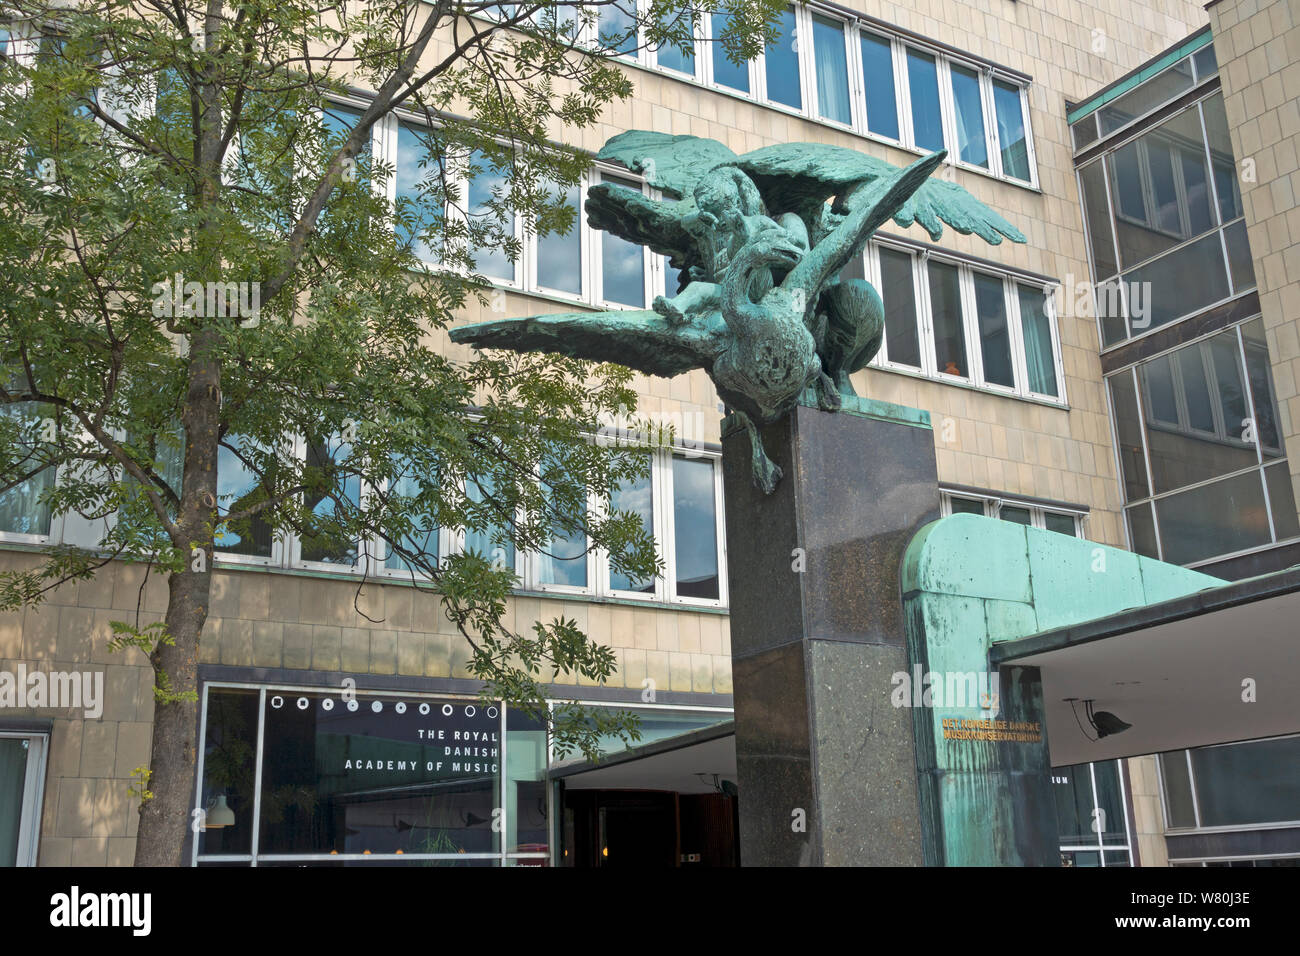 La radiofon escultura delante de la antigua casa de la Radio en Copenhague, ahora la Real Academia Danesa de música. La escultura del escultor Mogens Bøggild. Foto de stock